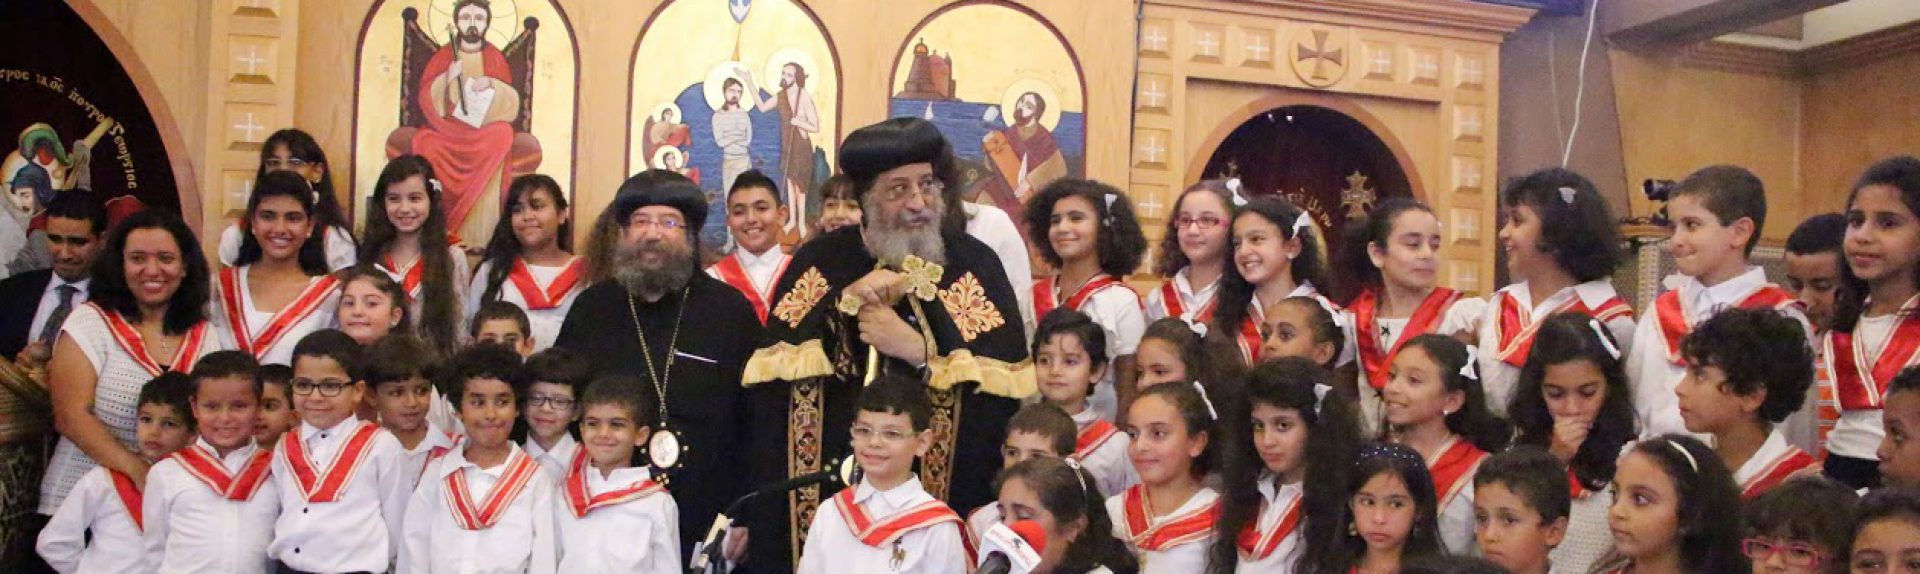 St. George Coptic Orthodox Church